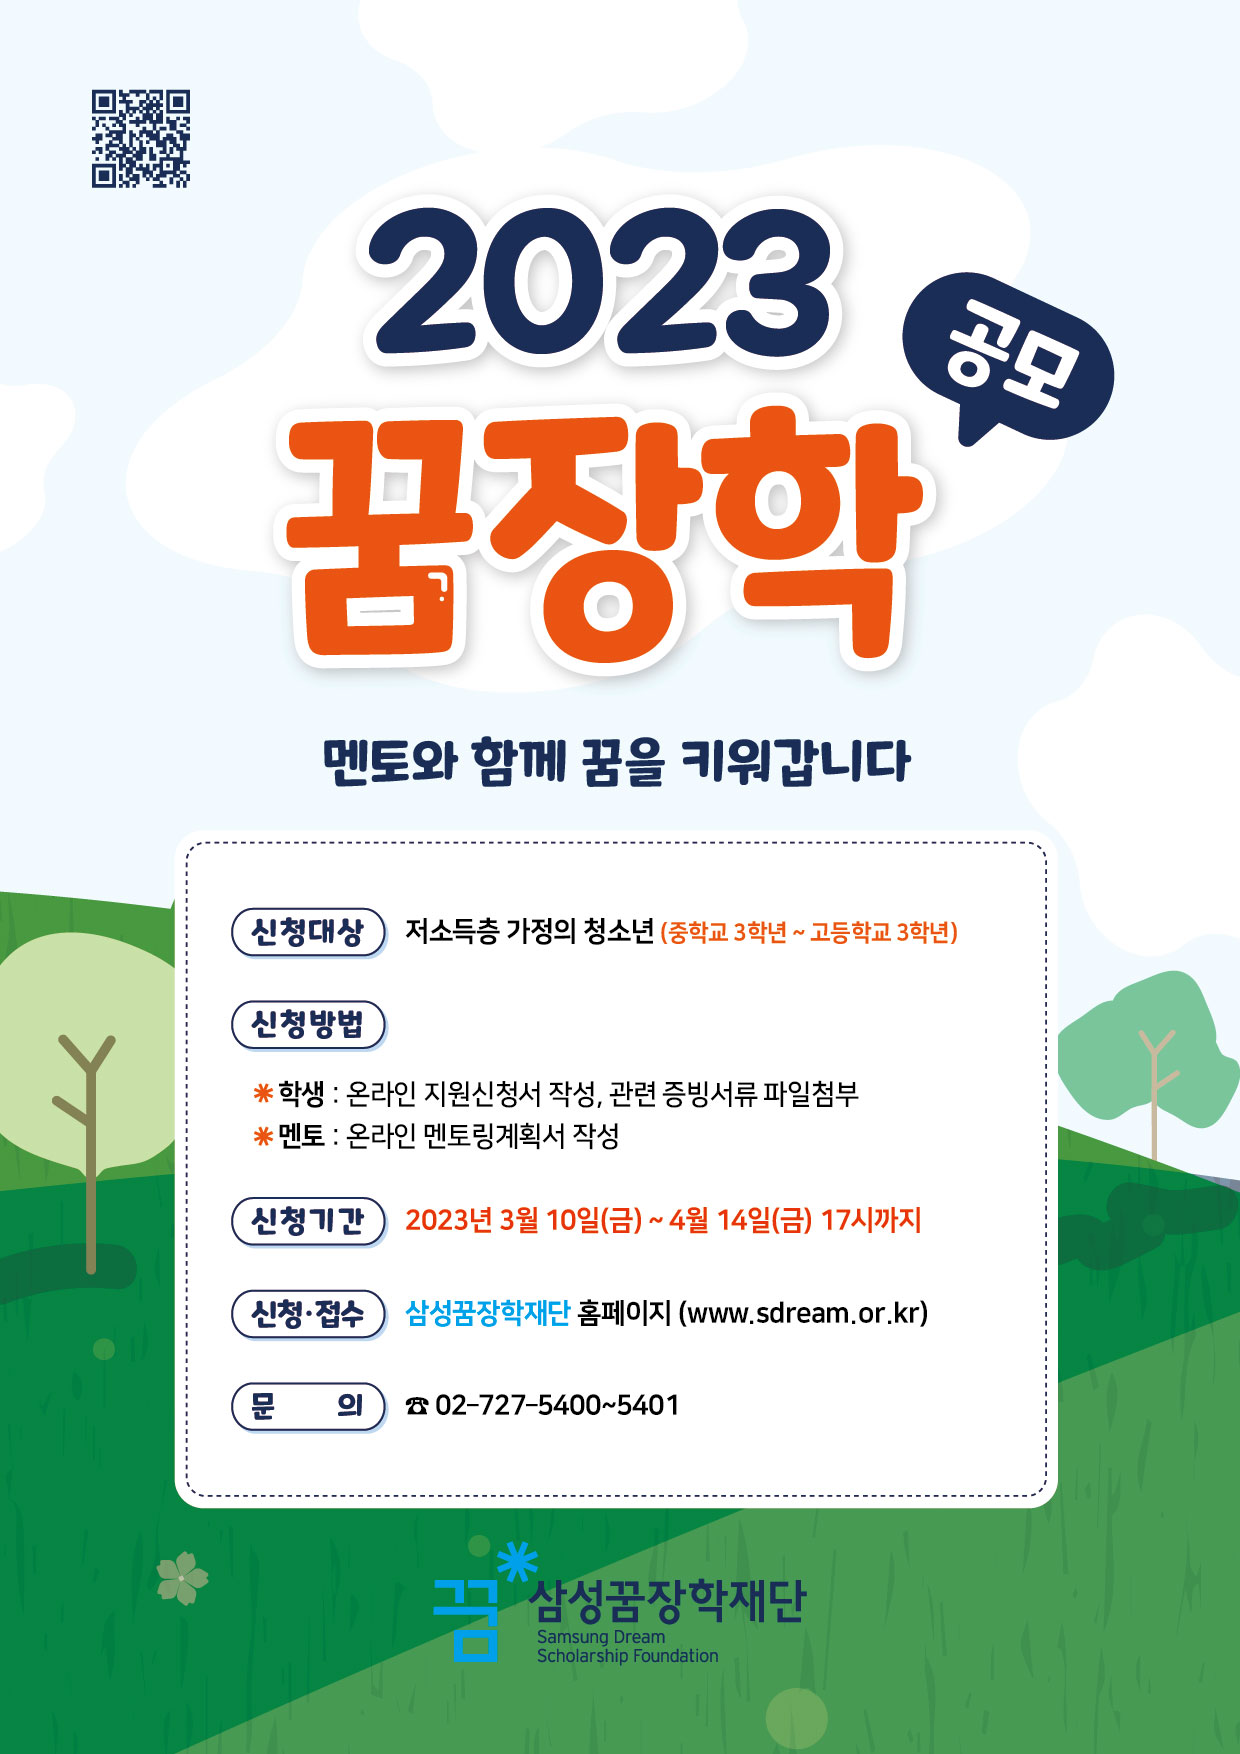 2023년 꿈장학 신청 안내 포스터